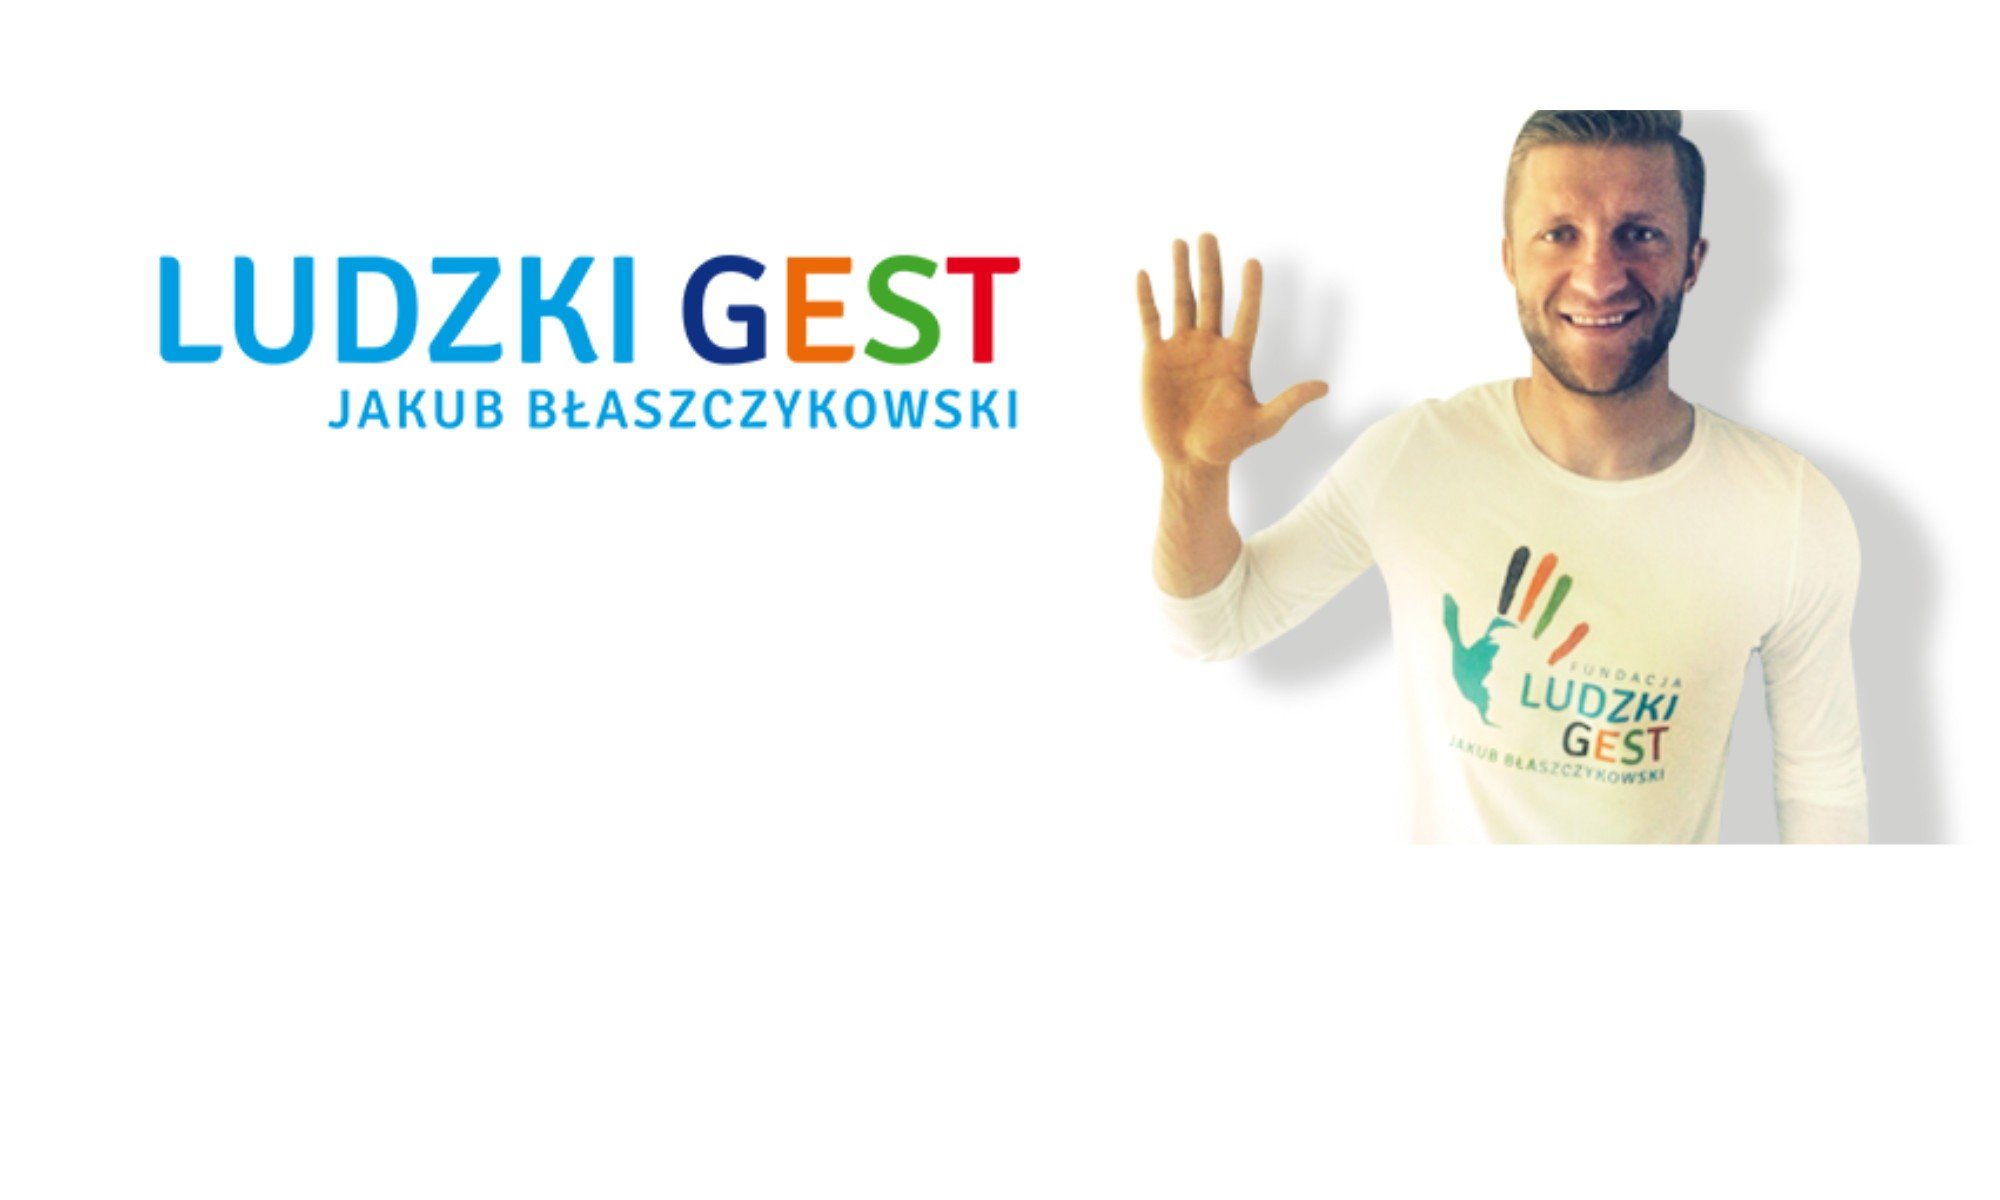 Drutex e Jakub Błaszczykowski insieme per i bambini!